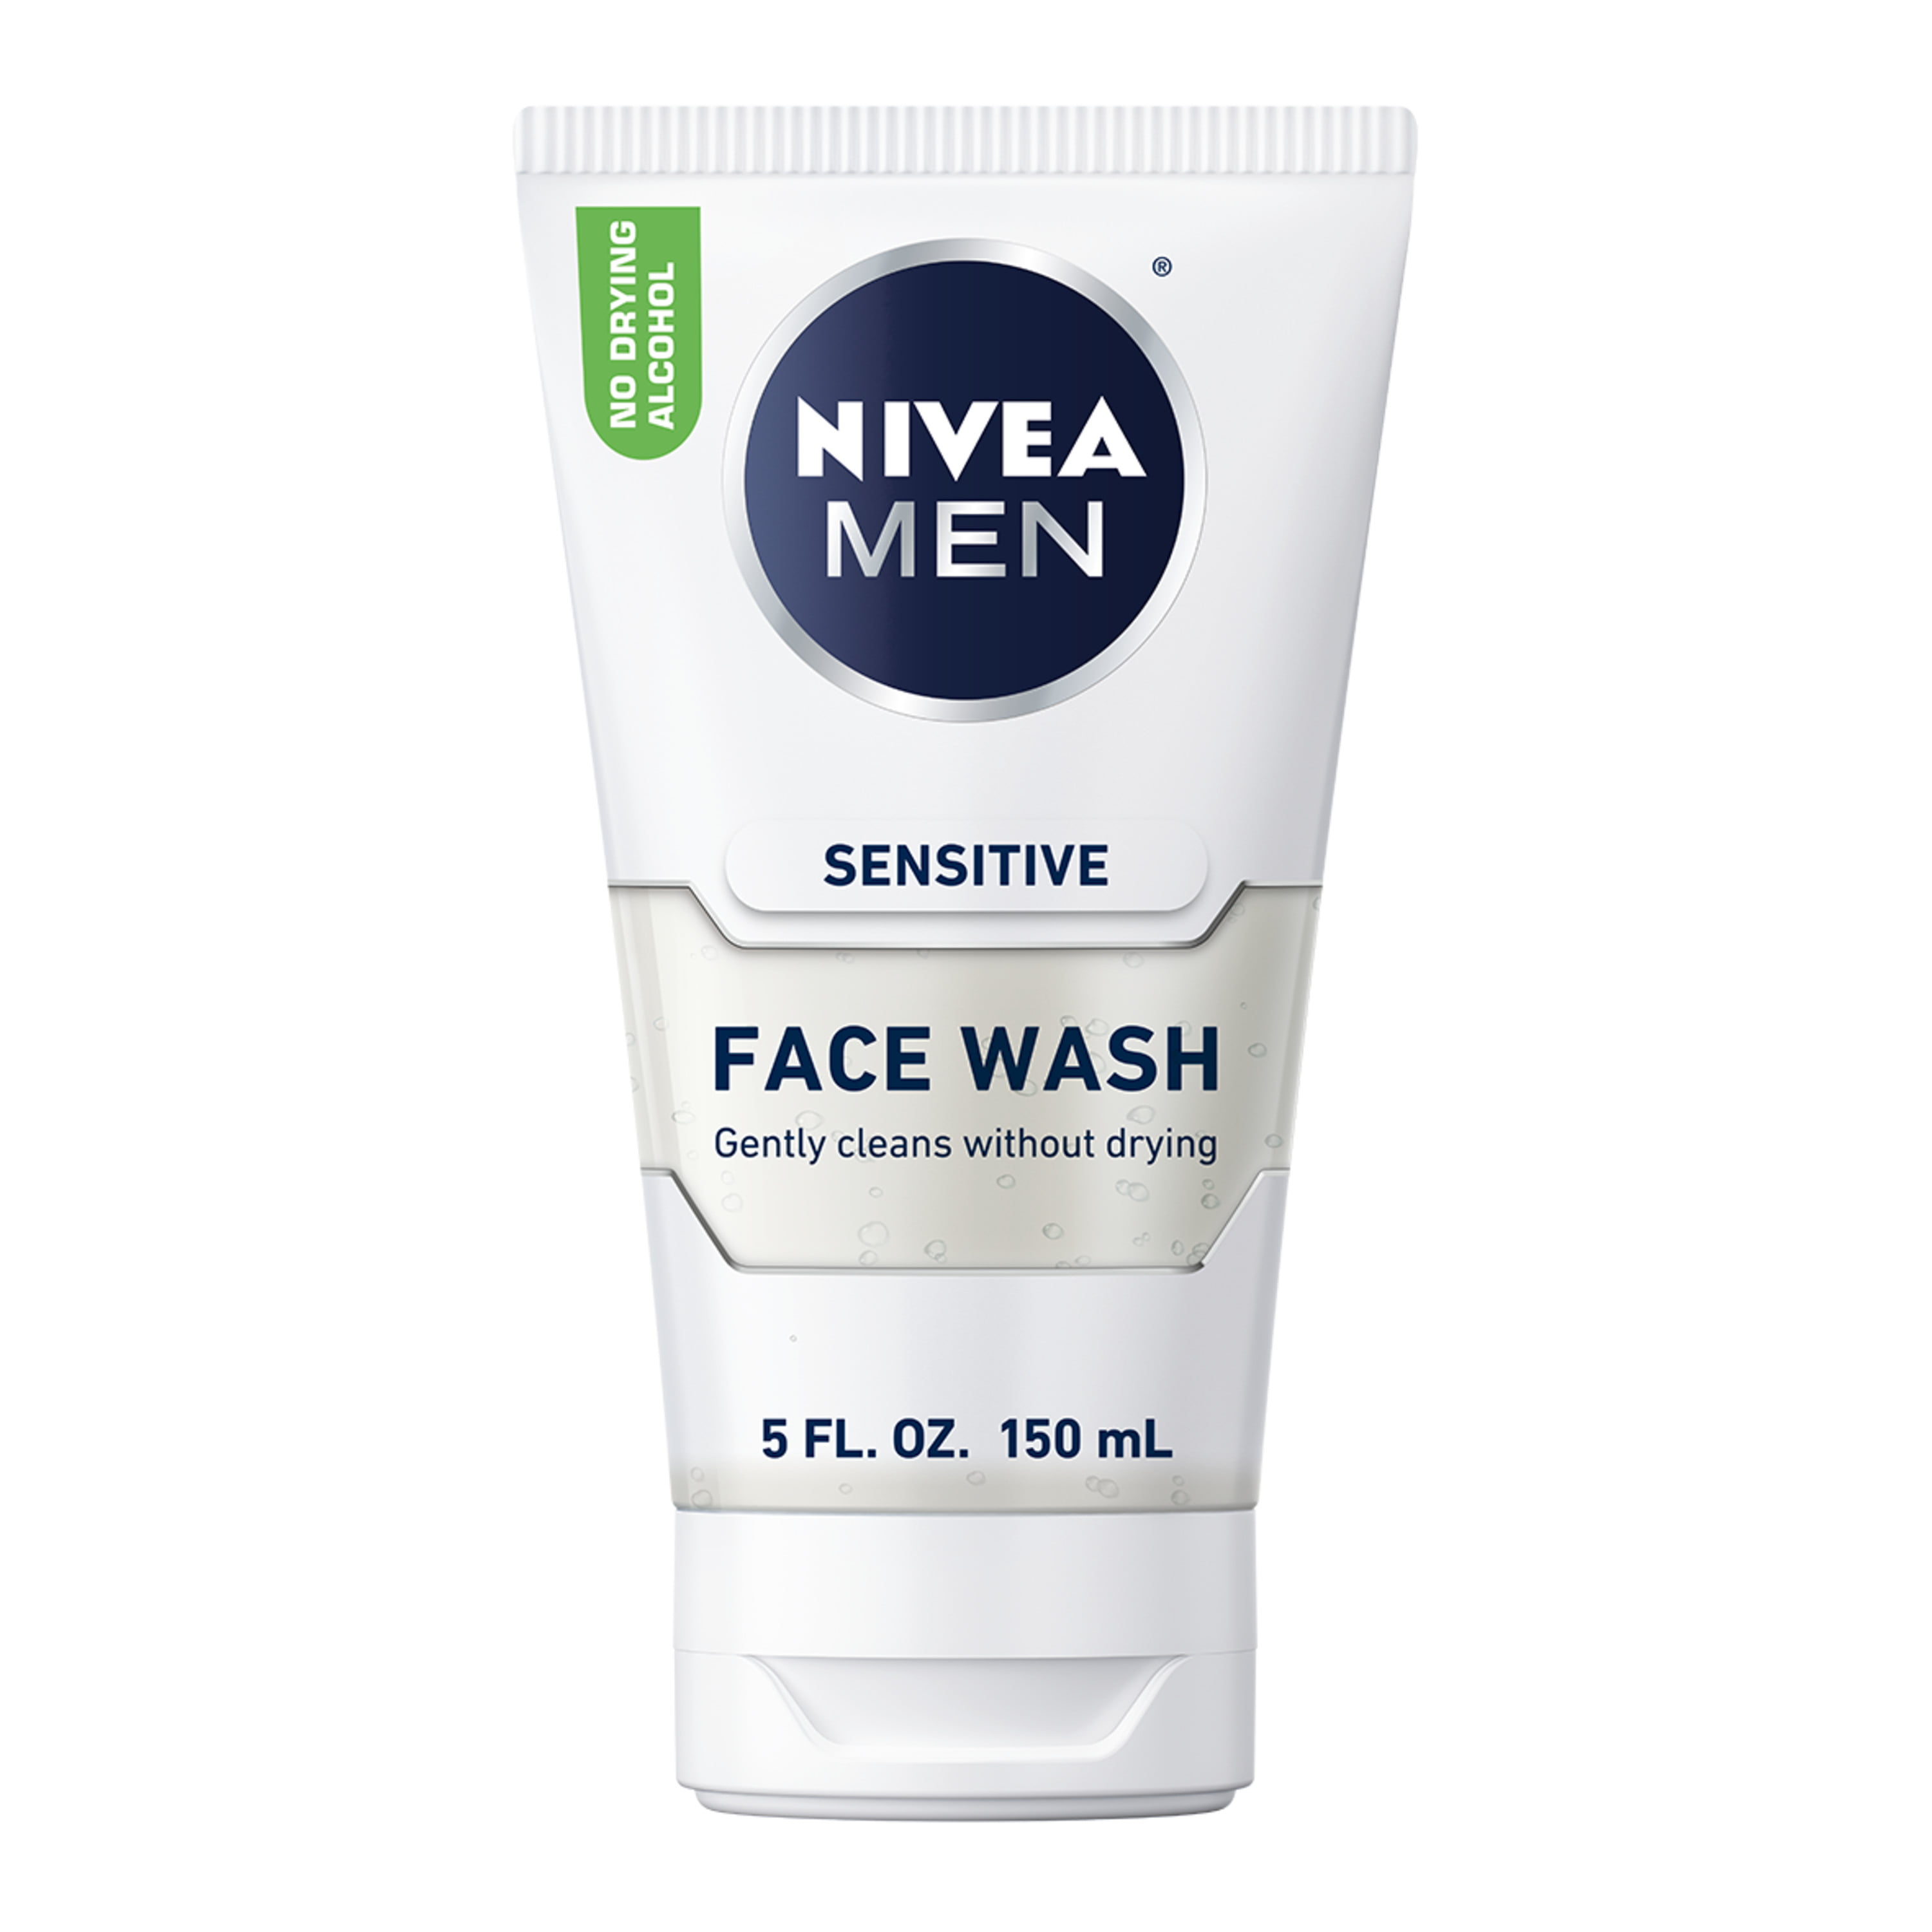 NIVEA MEN Sensitive Face Wash, 5 fl. oz. Bottle - Walmart.com - Walmart.com